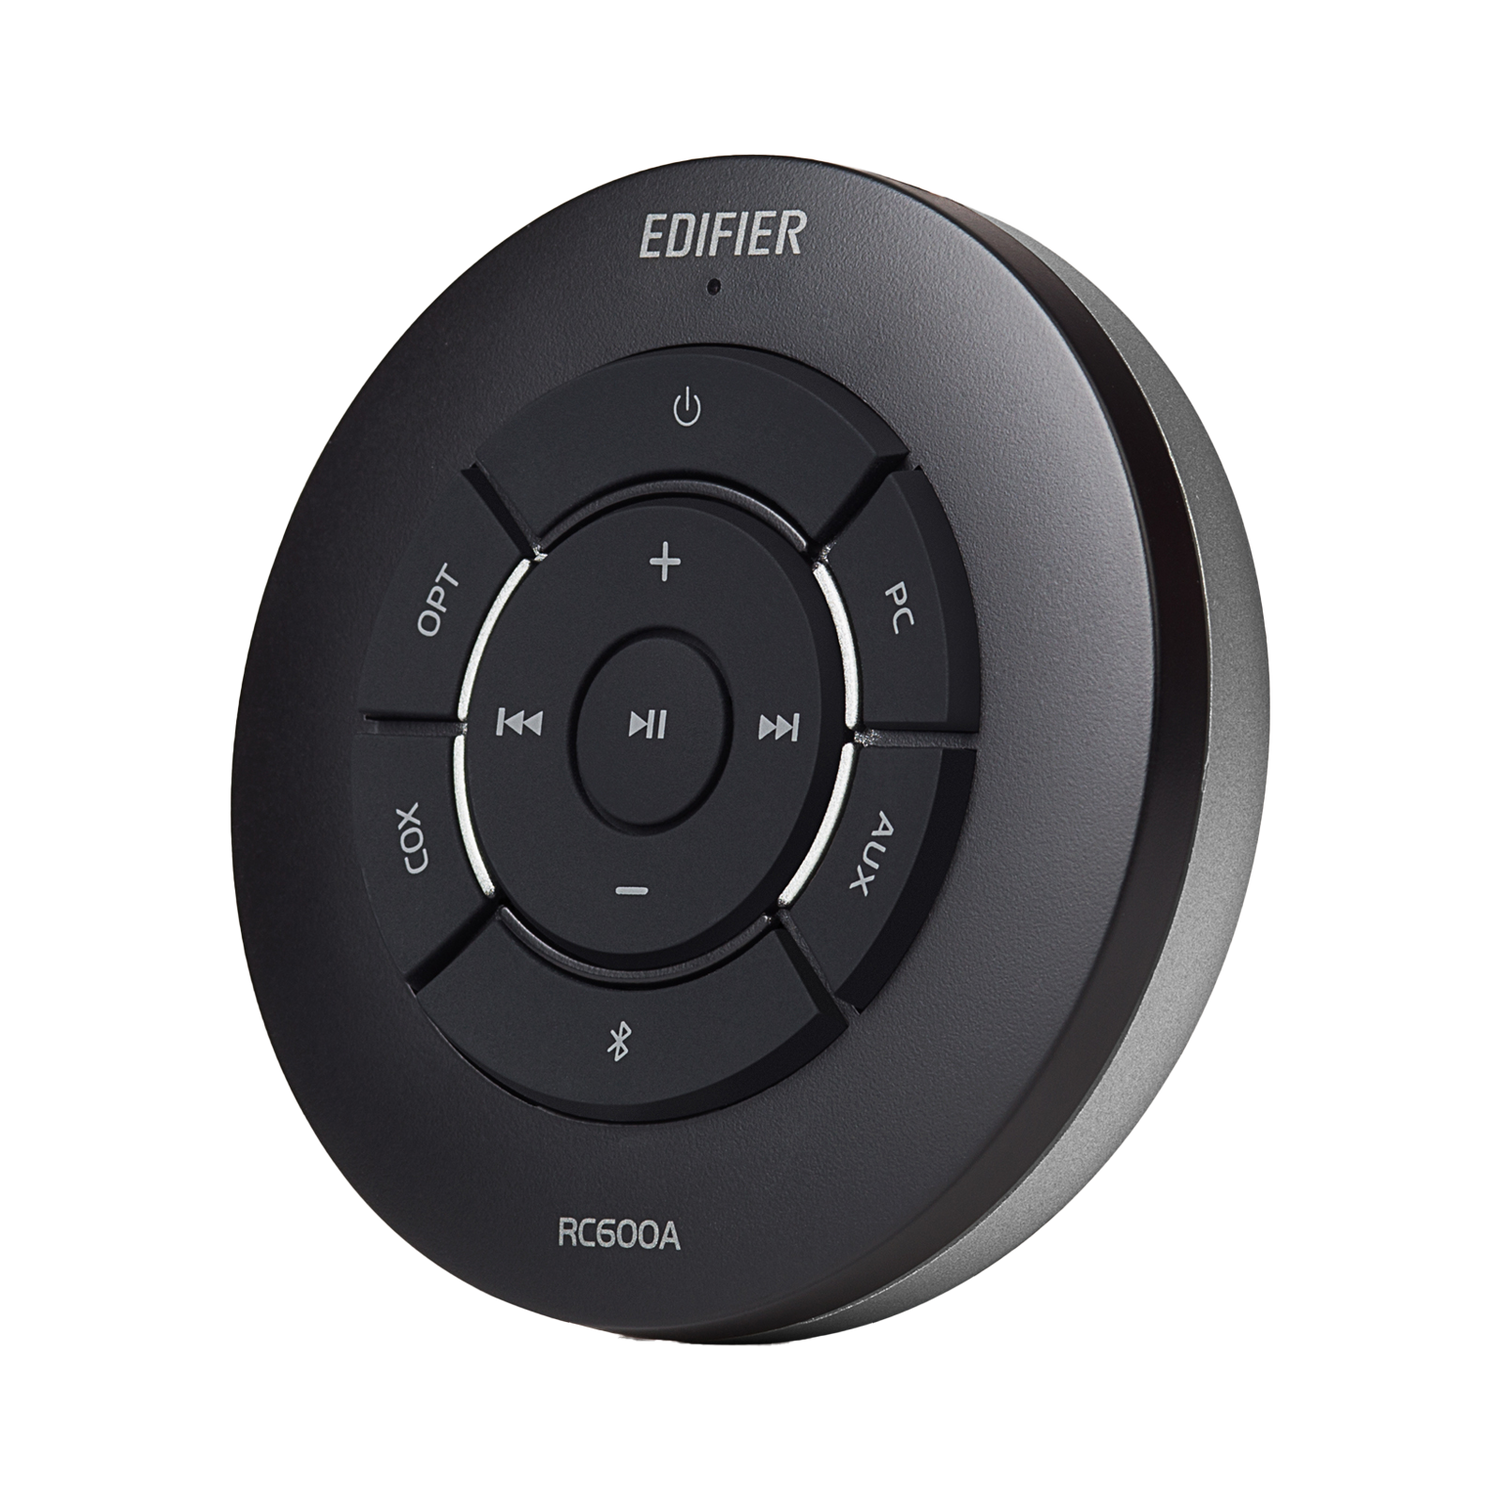 Haut-parleurs S360DB 2.1, audio haute résolution avec caisson de basses sans fil 